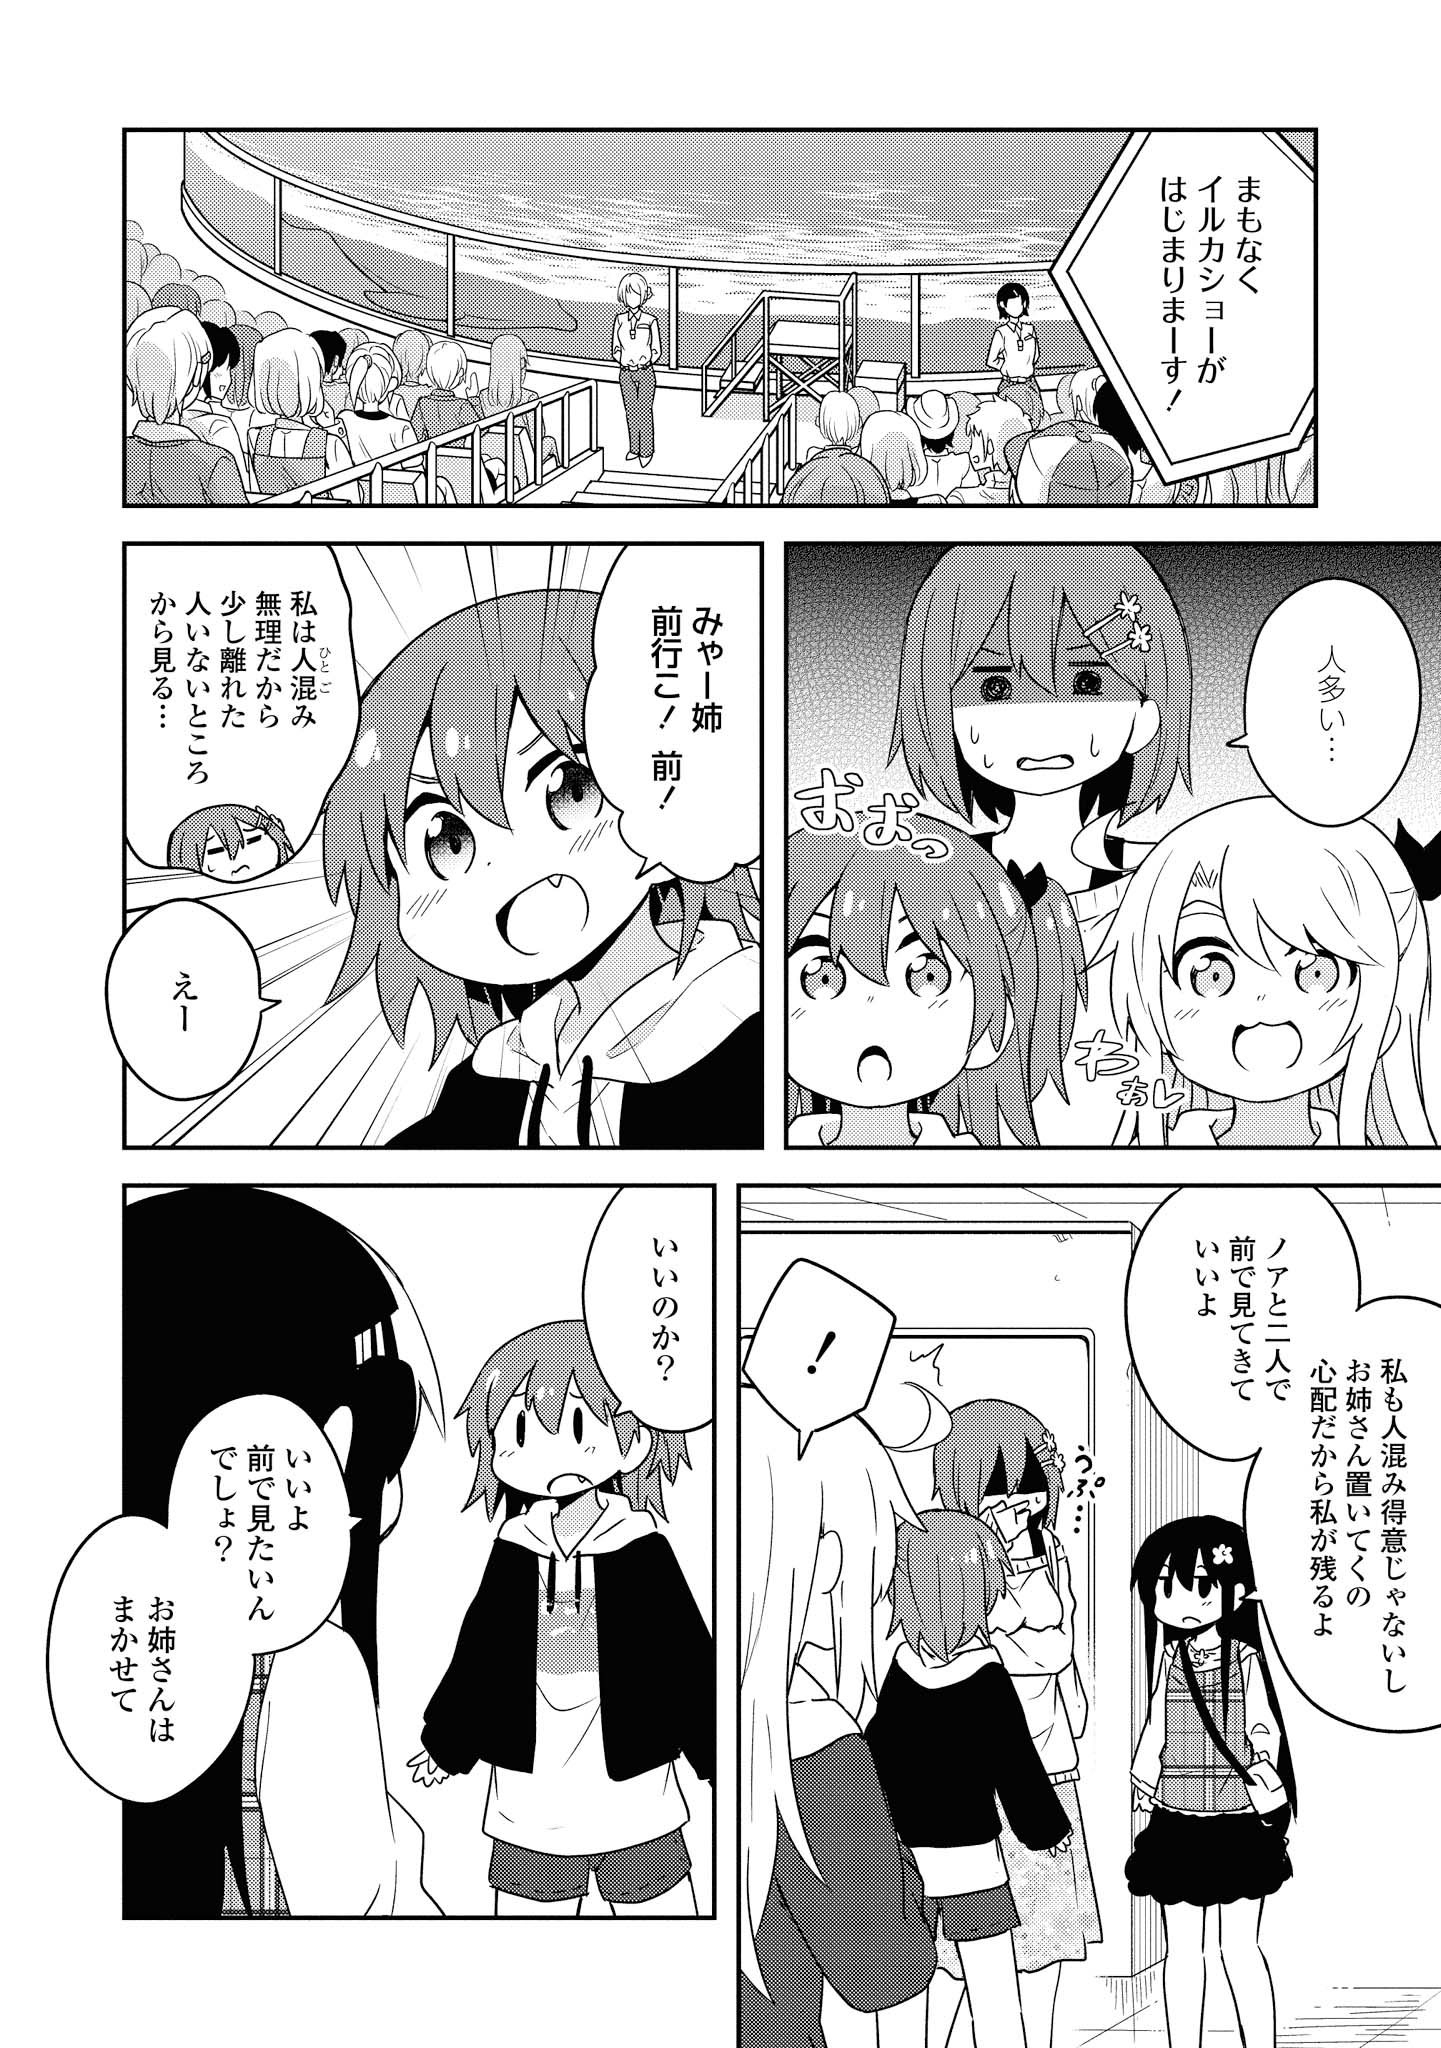 Watashi ni Tenshi ga Maiorita! - Chapter 59 - Page 12